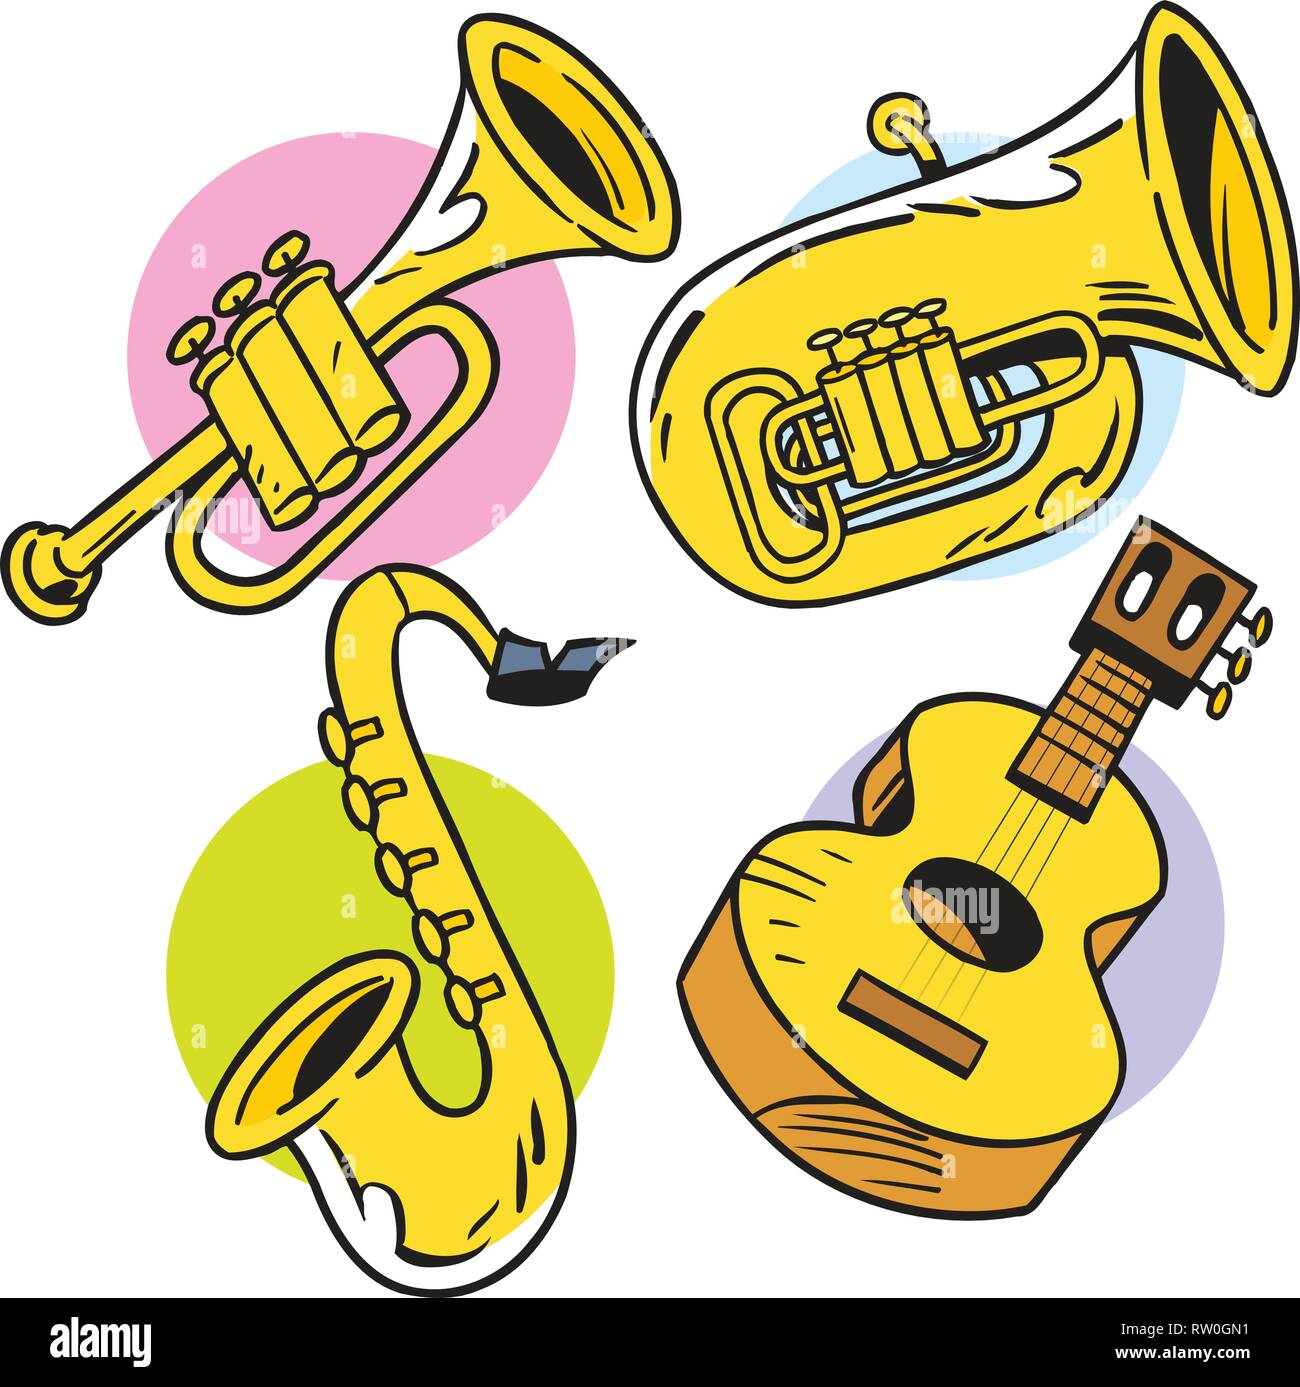 Klaxon de jazz de Noël illustration stock. Illustration du musique